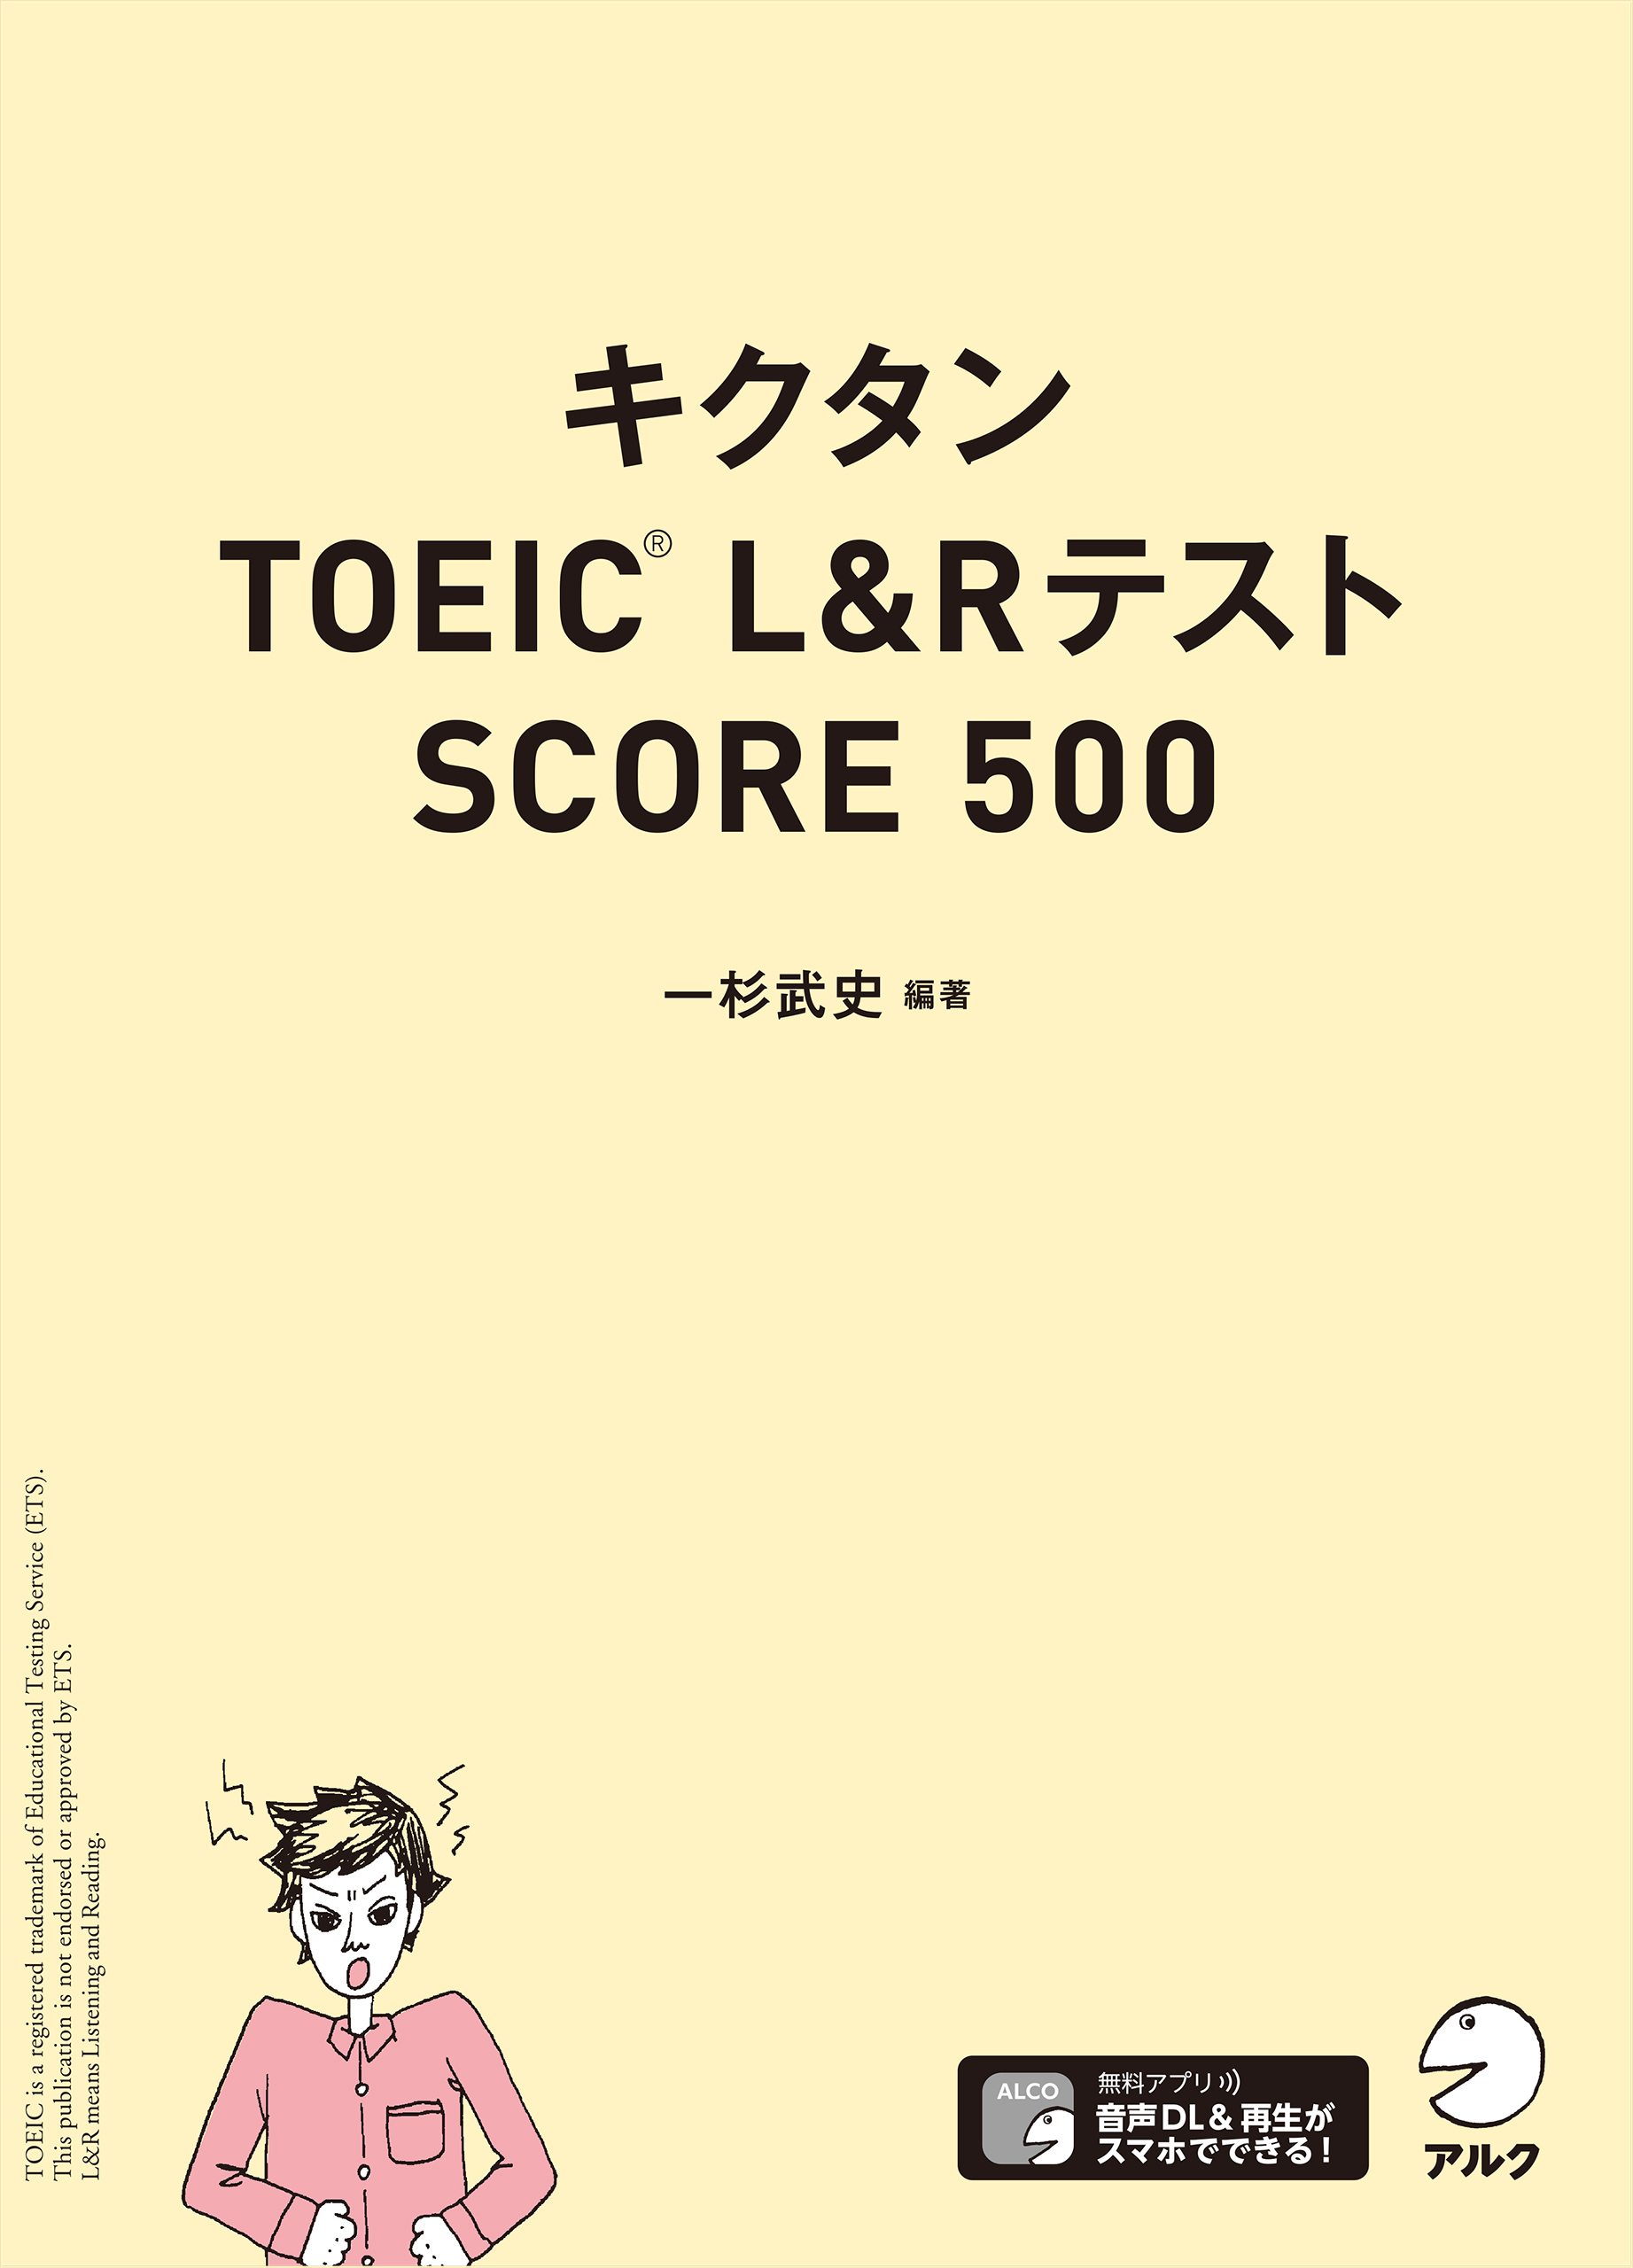 キクタン TOEIC Test Score600 聞いて覚える英単語